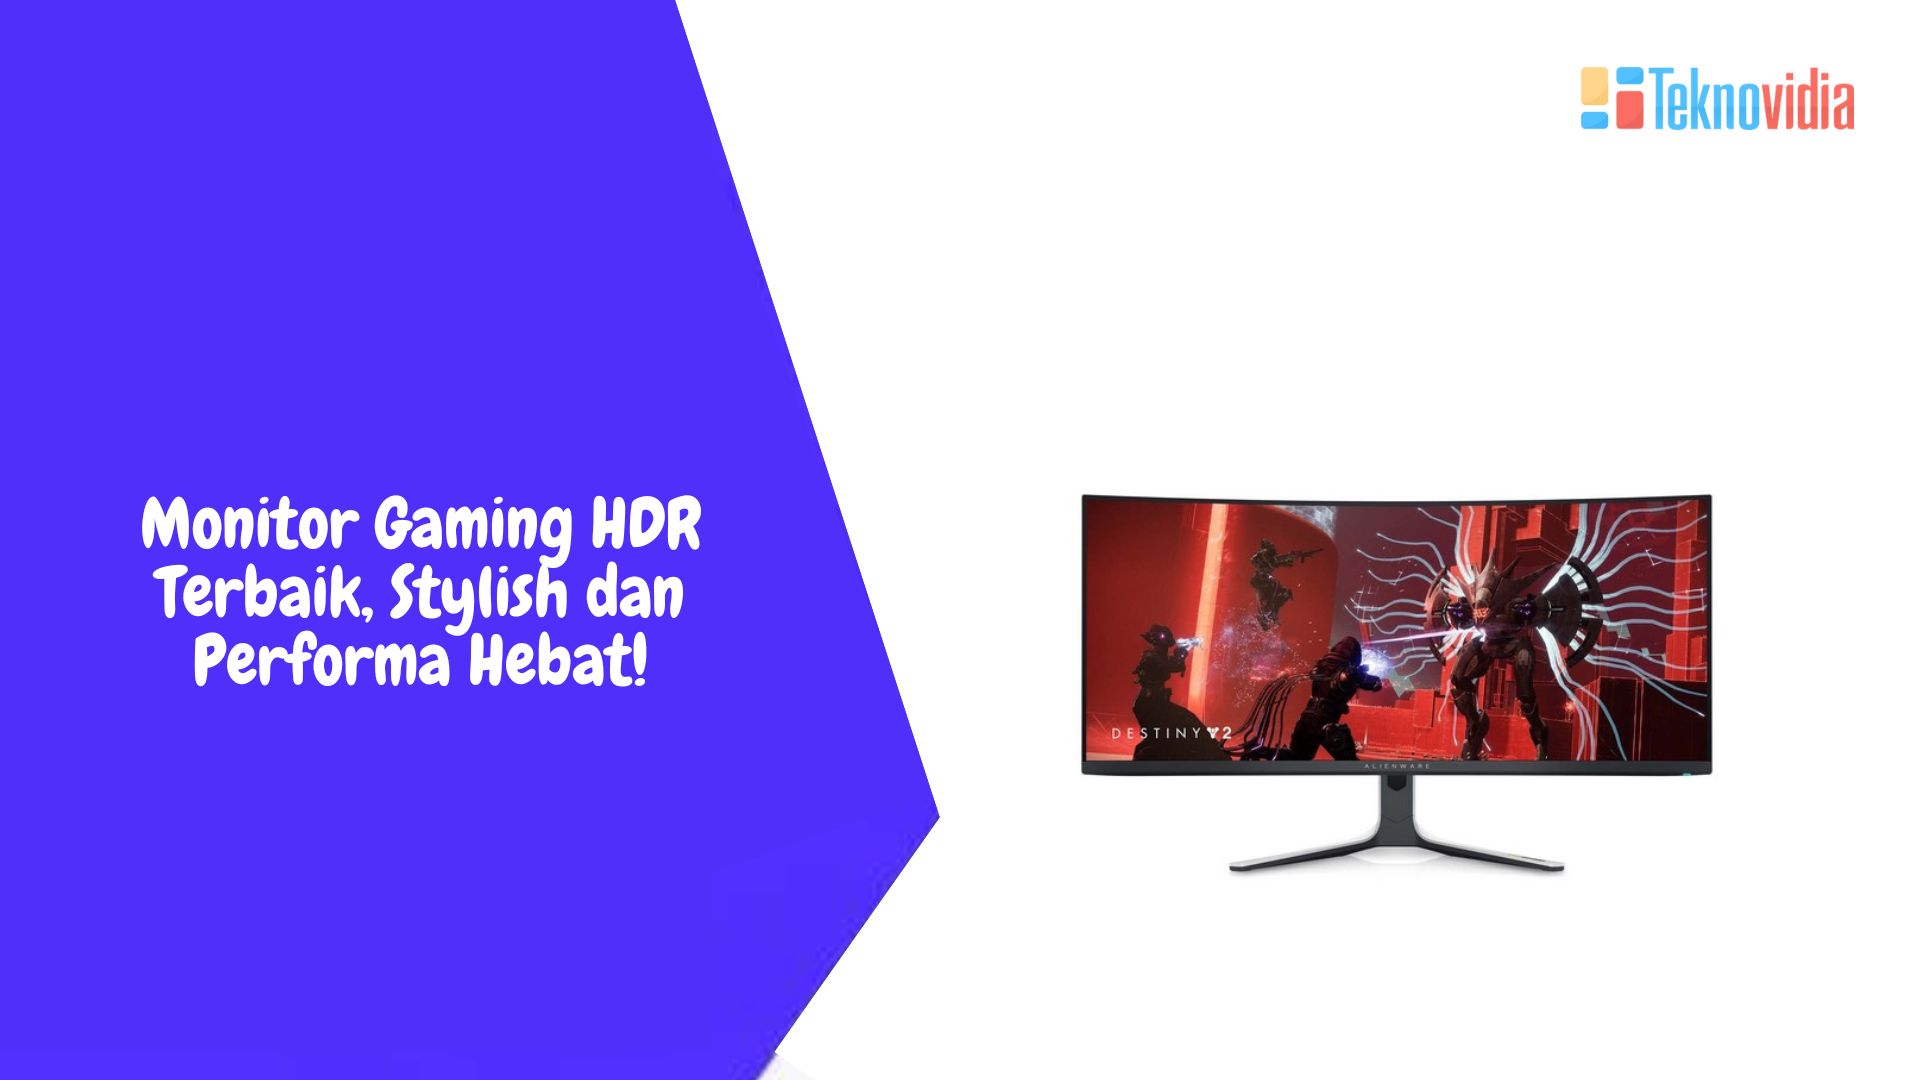 Monitor Gaming HDR Terbaik, Stylish dan Performa Hebat!